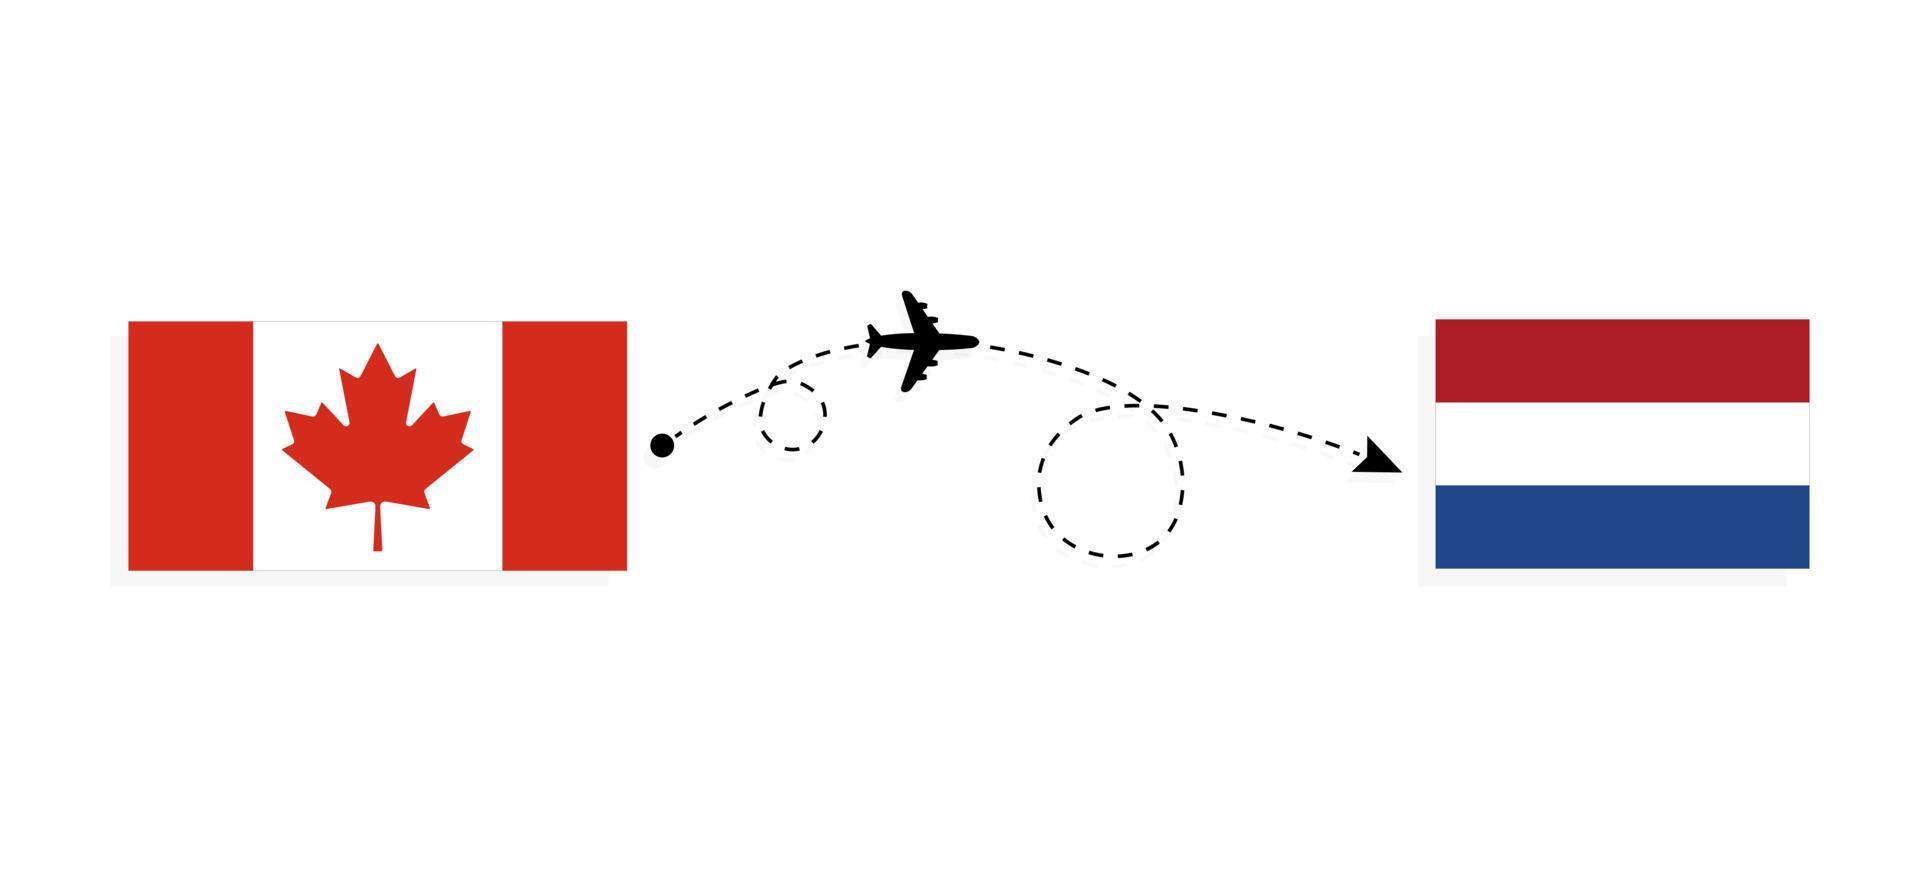 flyg och resor från Kanada till Nederländerna med resekoncept för passagerarflygplan vektor